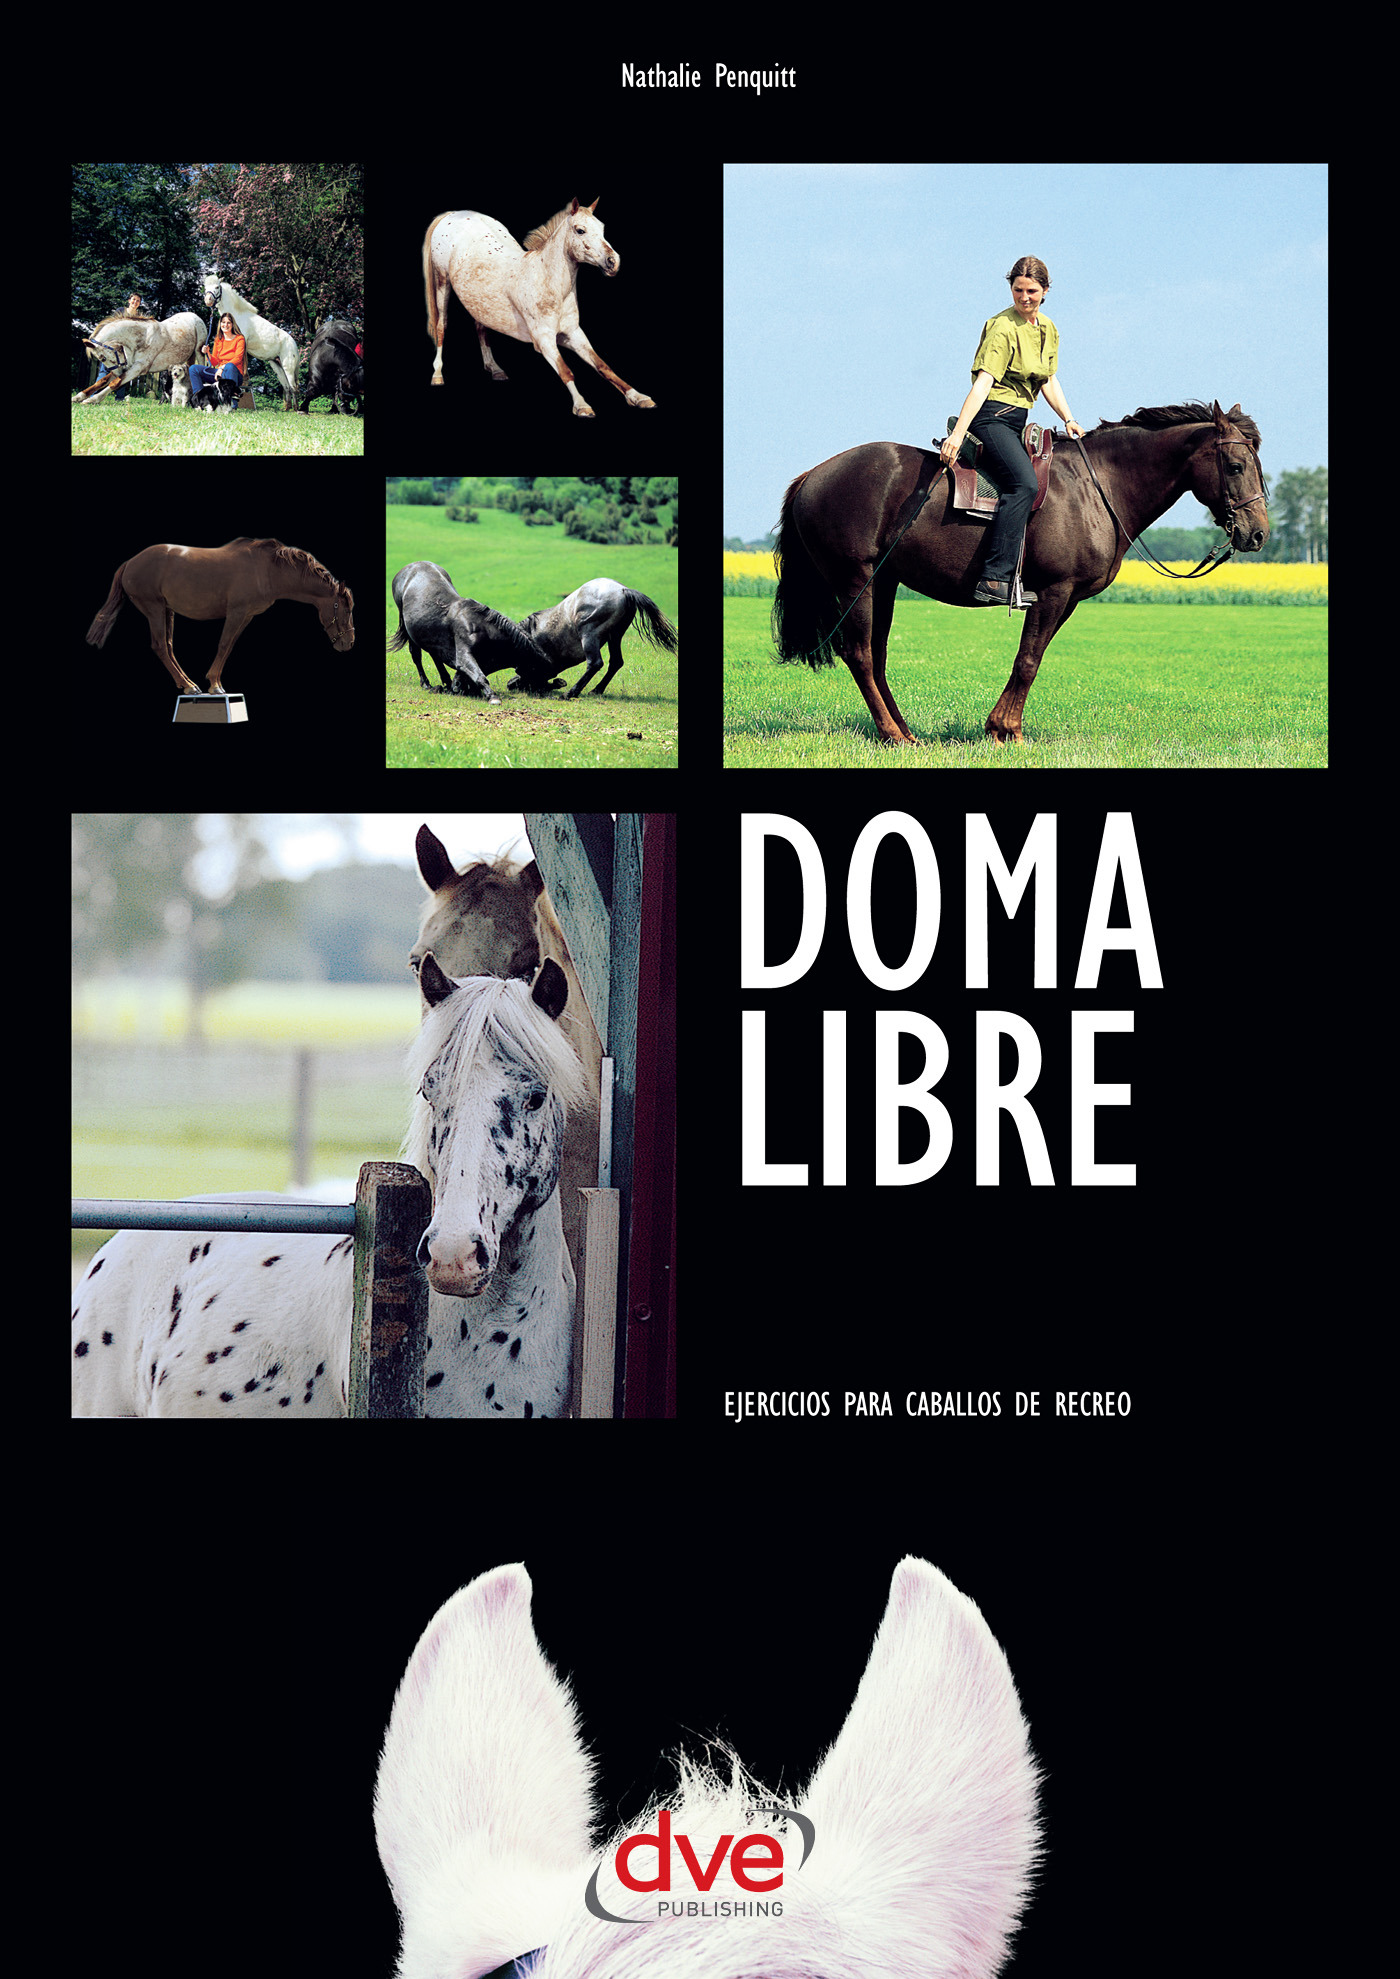 Penquitt, Nathalie - Doma libre. Ejercicios para caballos de recreo, ebook